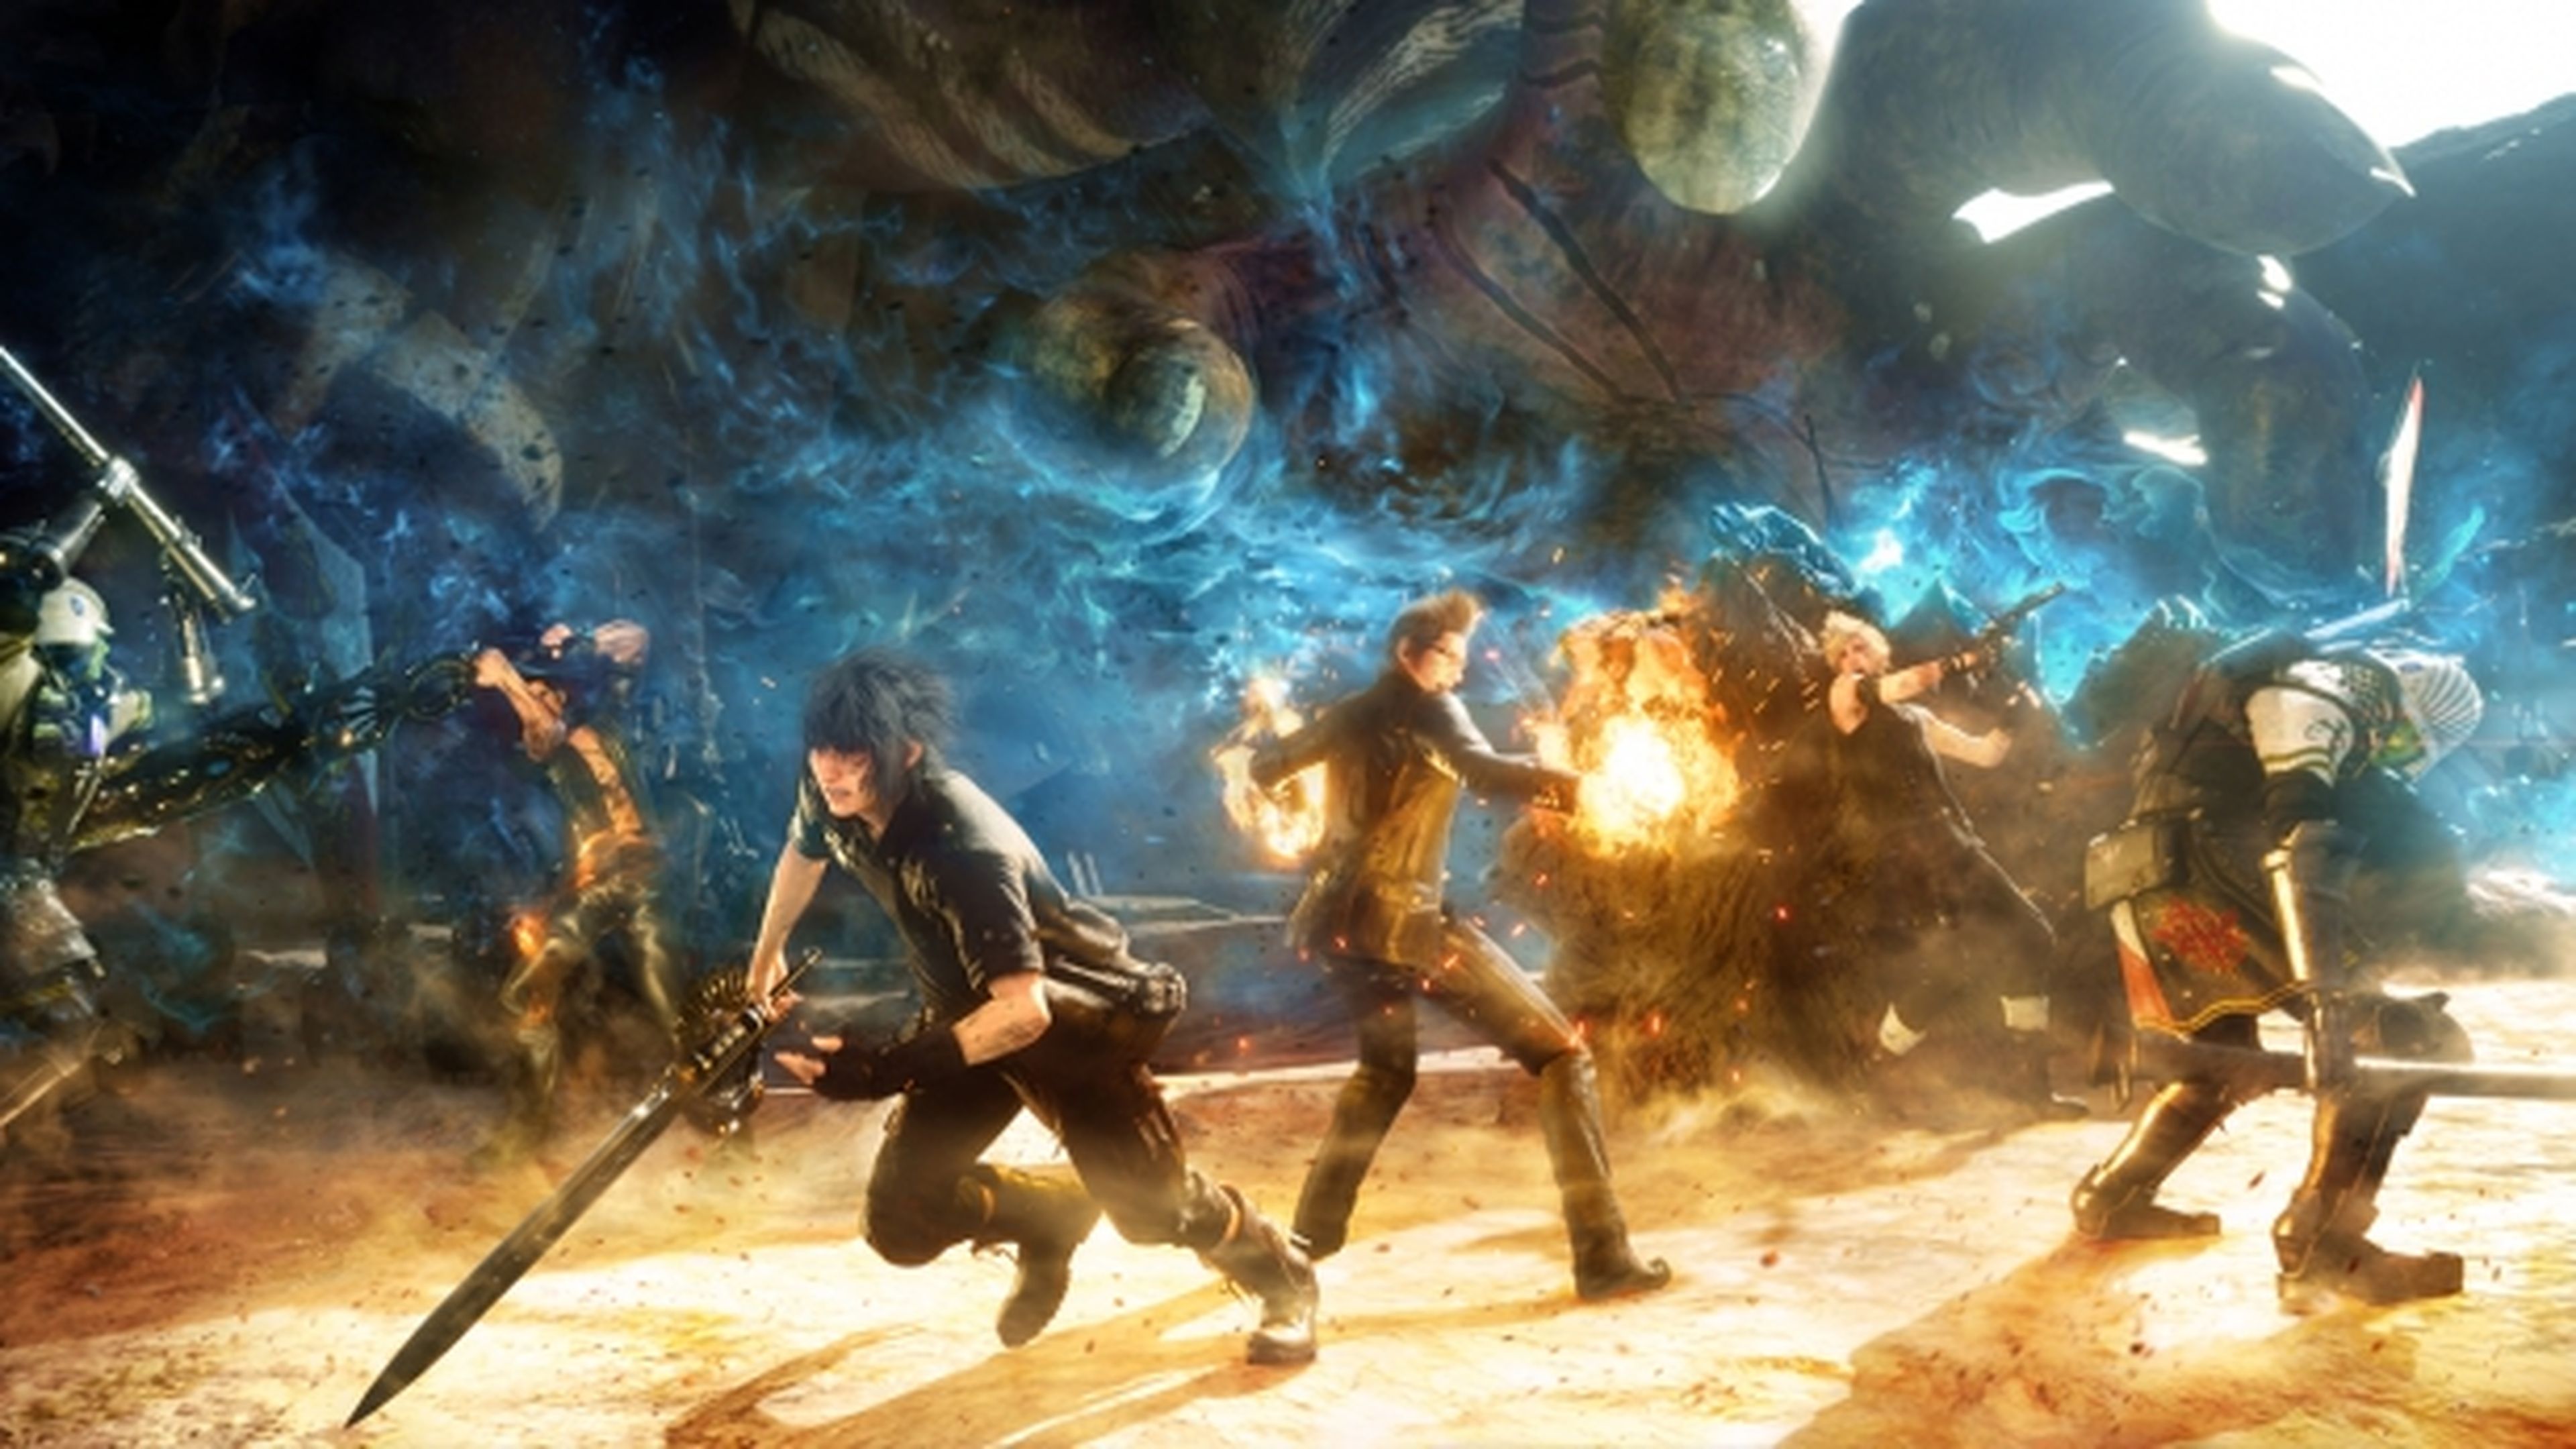 Imágenes de Final Fantasy XV en alta definición